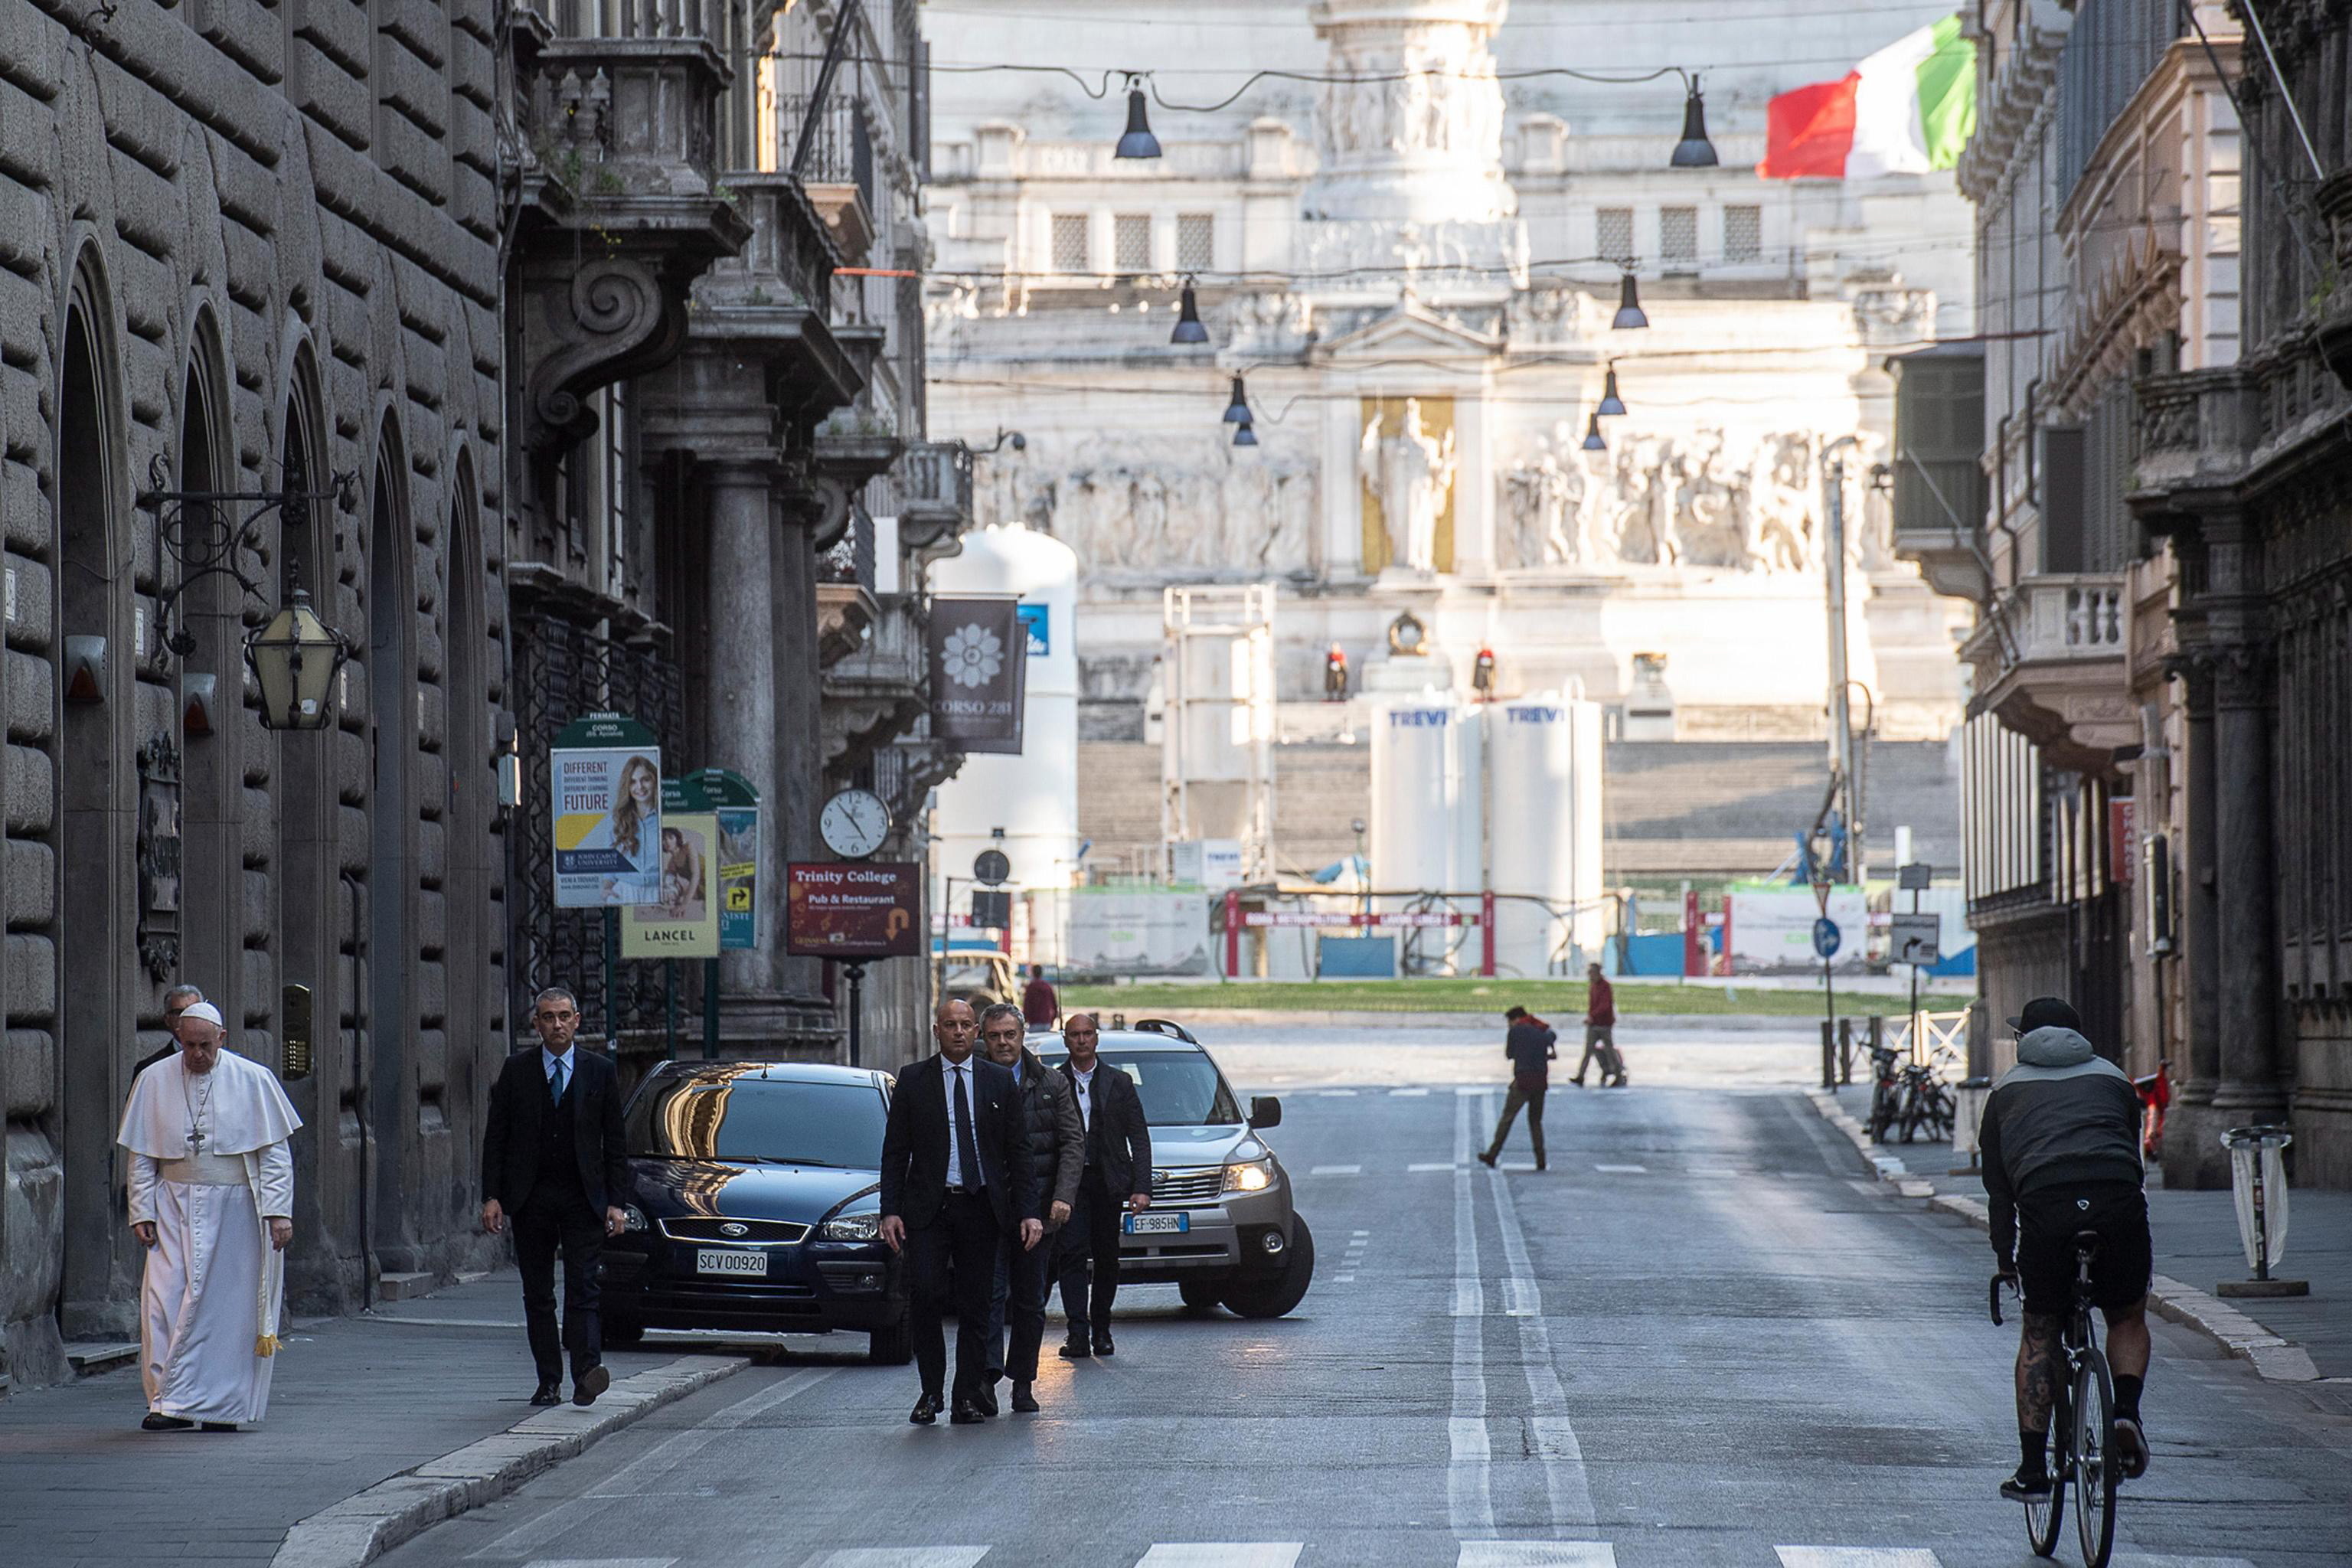 Papa, pe jos pe străzile pustii ale Romei, pentru a se ruga pentru sfârşitul pandemiei